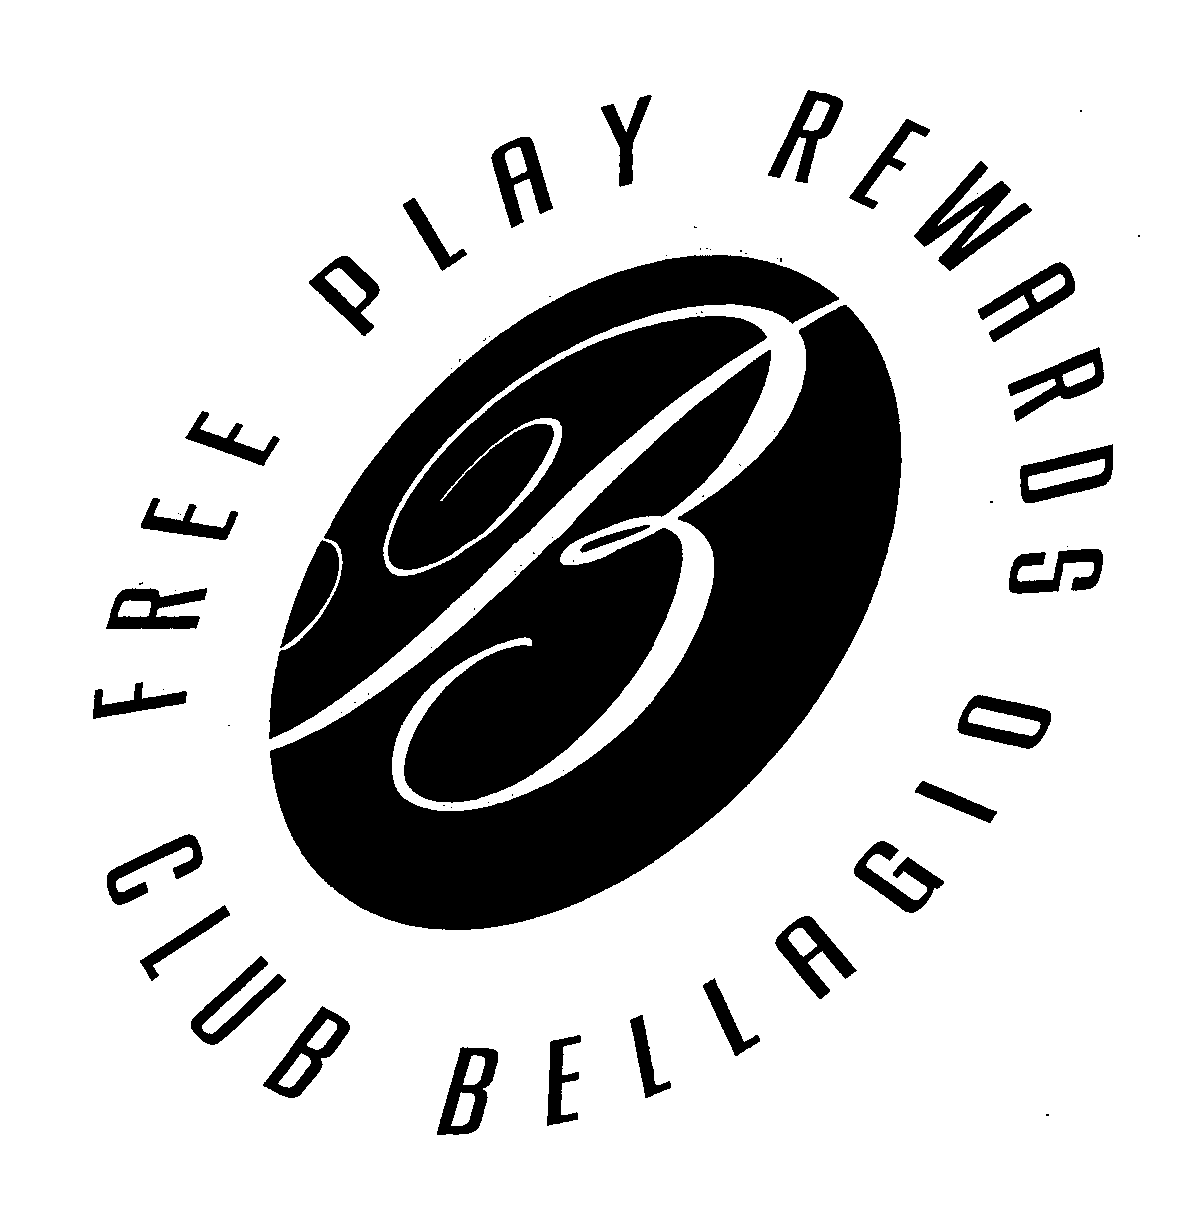  FREE PLAY REWARDS CLUB BELLAGIO B